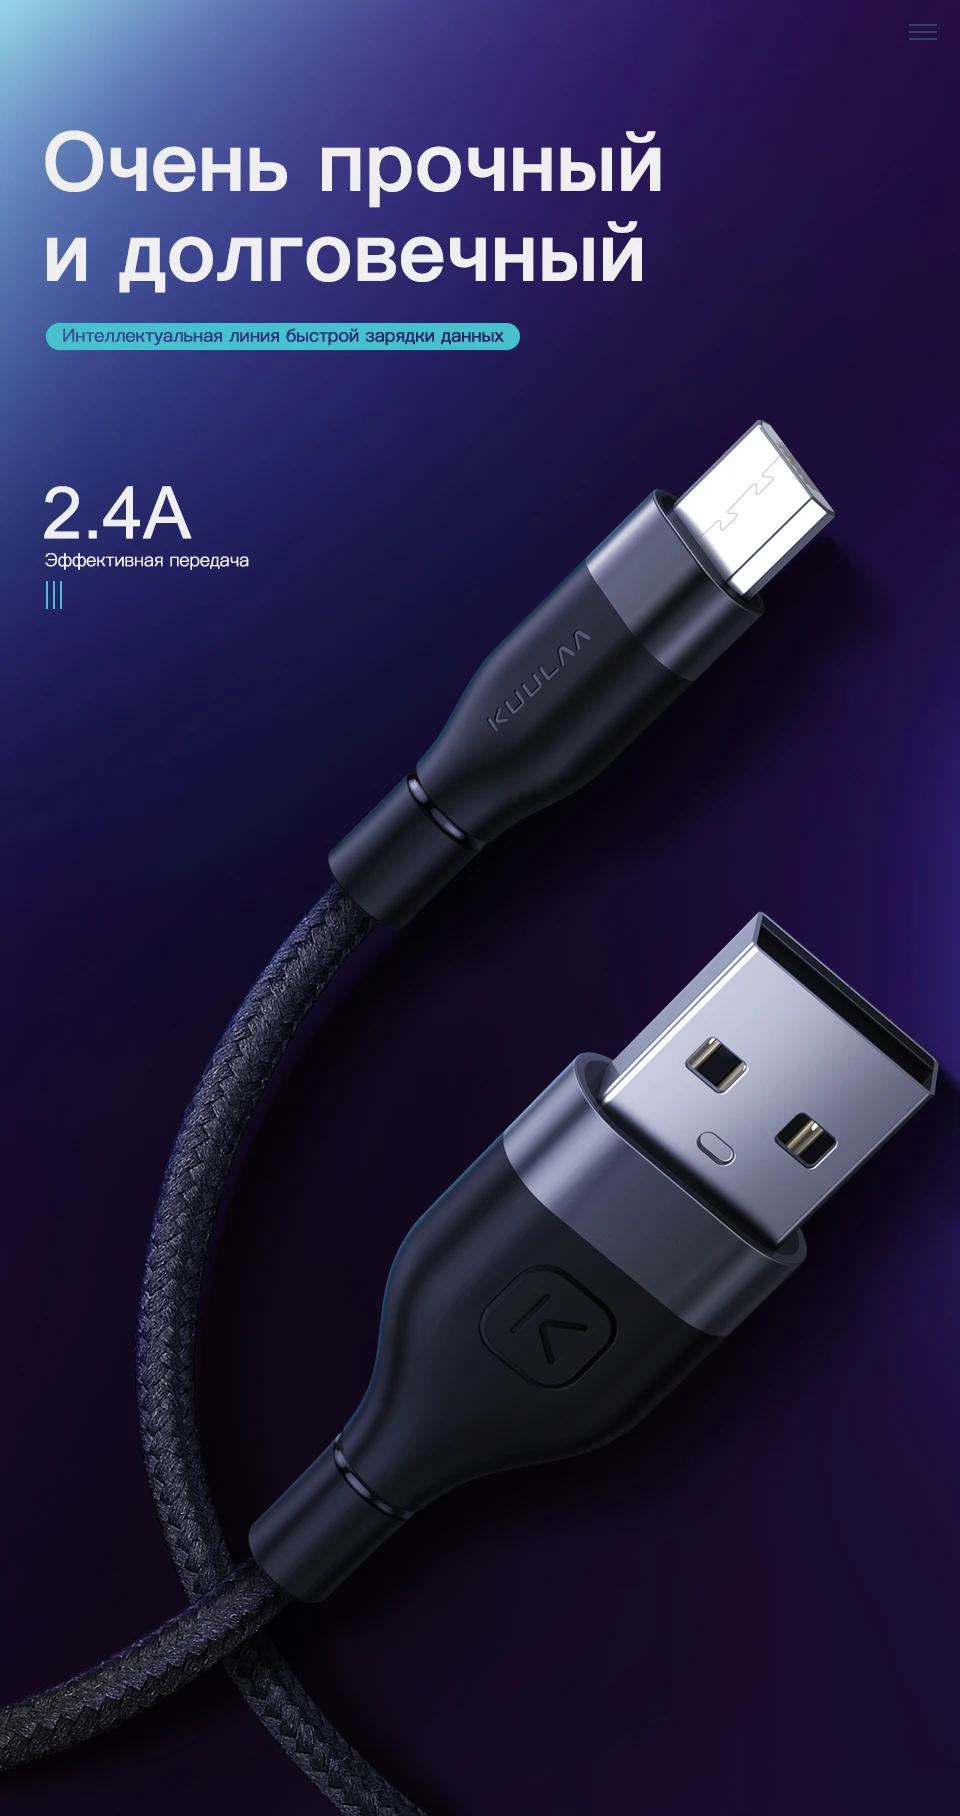 KUULAA Micro USB кабель для samsung Быстрая Зарядка Кабели для мобильных телефонов MicroUSB кабель для передачи данных для Xiaomi Redmi Note 4 huawei Honor 8X